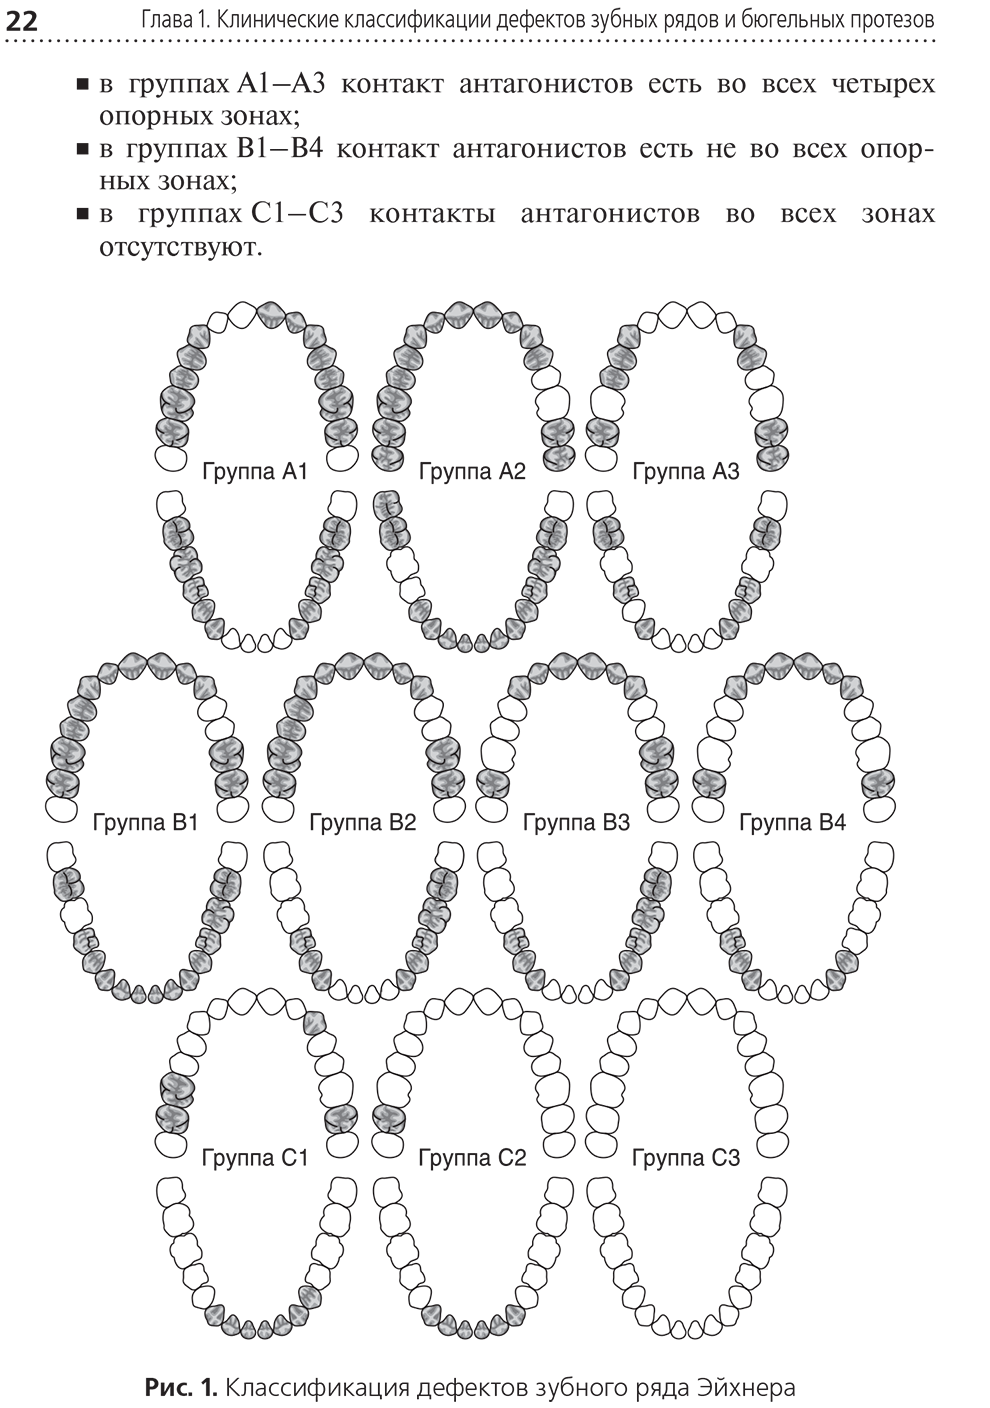 Рис. 1. Классификация дефектов зубного ряда Эйхнера